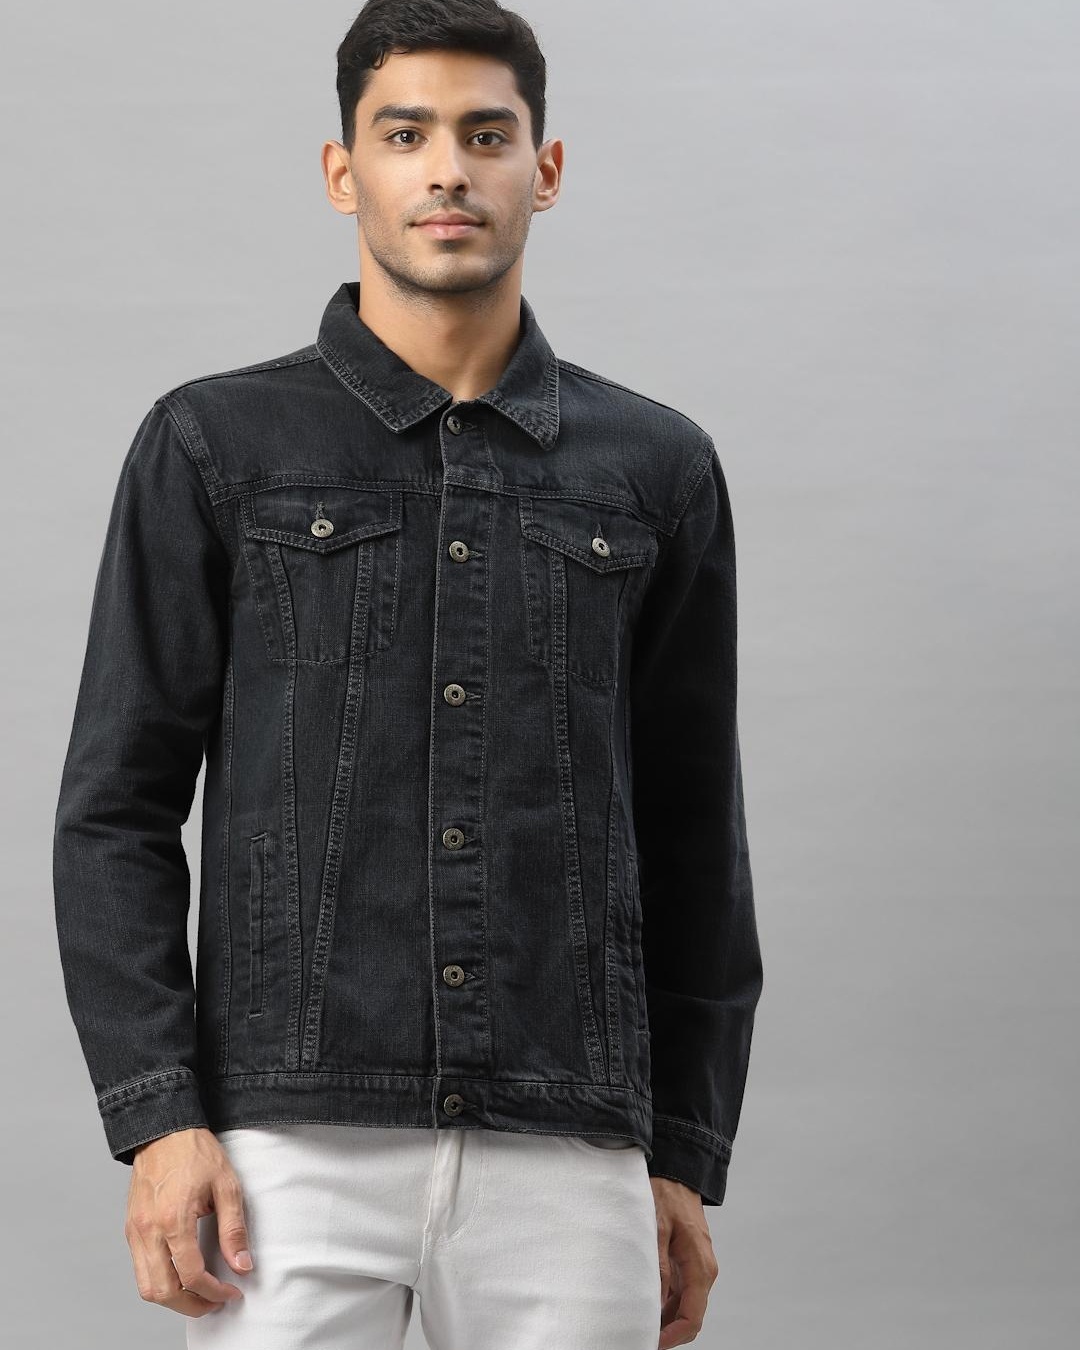 Buy Men's Grey Denim Jacket Online at Bewakoof